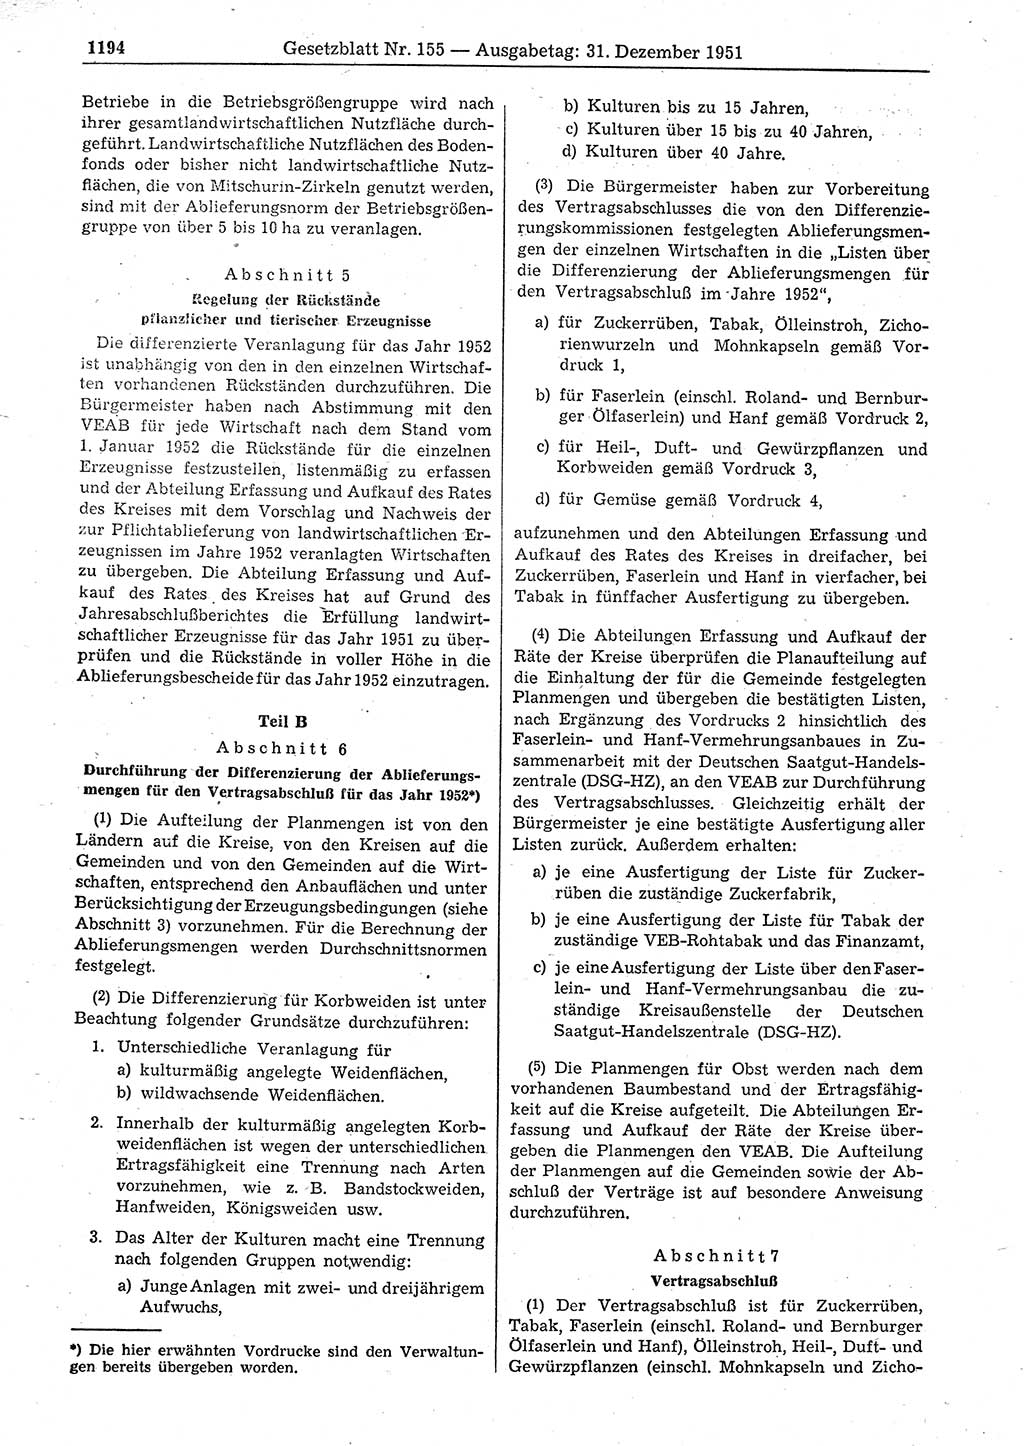 Gesetzblatt (GBl.) der Deutschen Demokratischen Republik (DDR) 1951, Seite 1194 (GBl. DDR 1951, S. 1194)